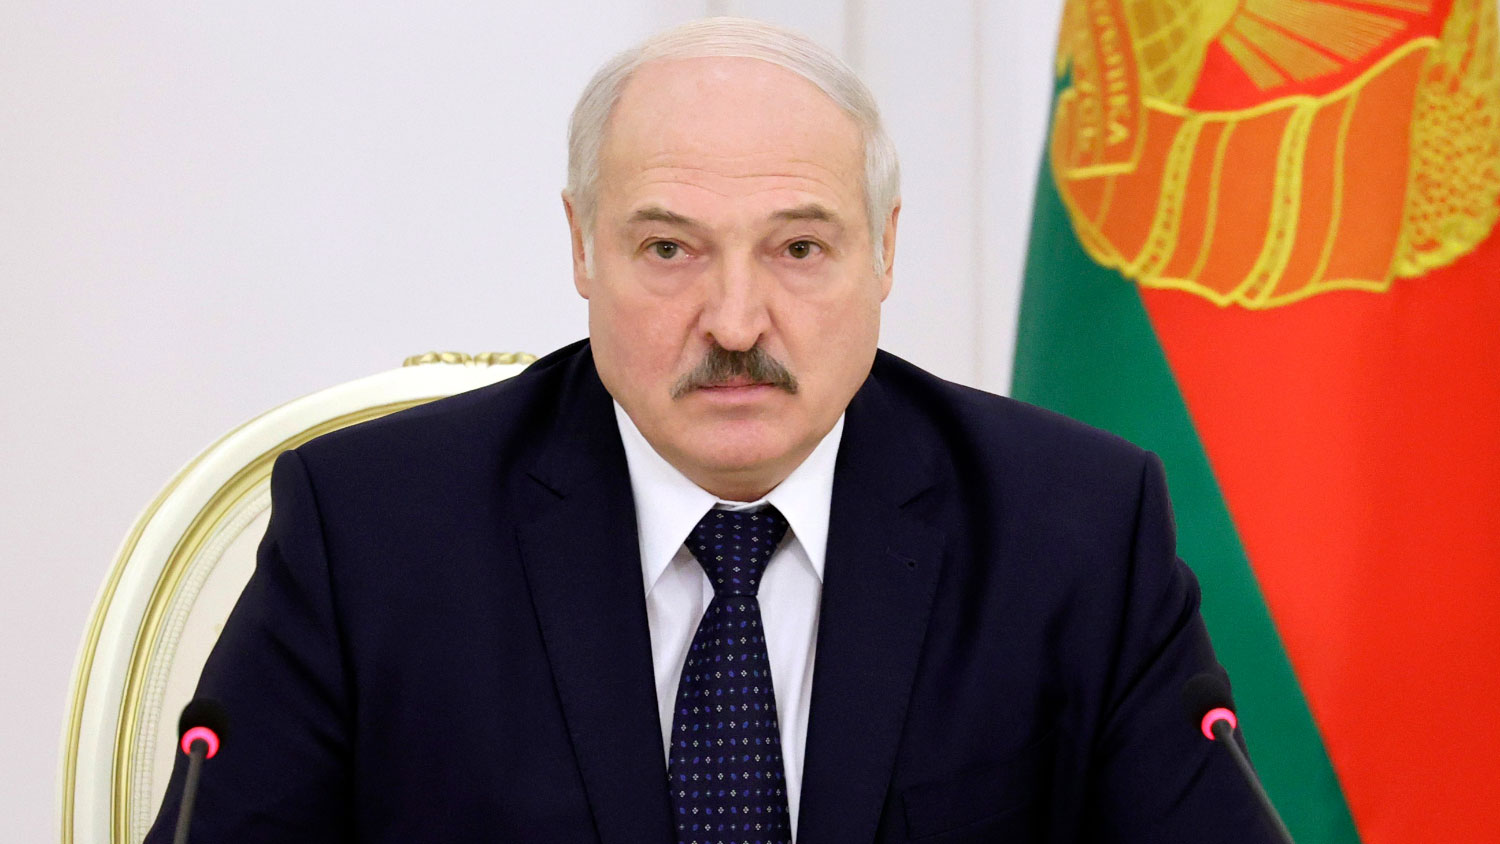 Лукашенко назвал ложью информацию о принуждении самолета Ryanair к посадке истребителем МиГ-29 